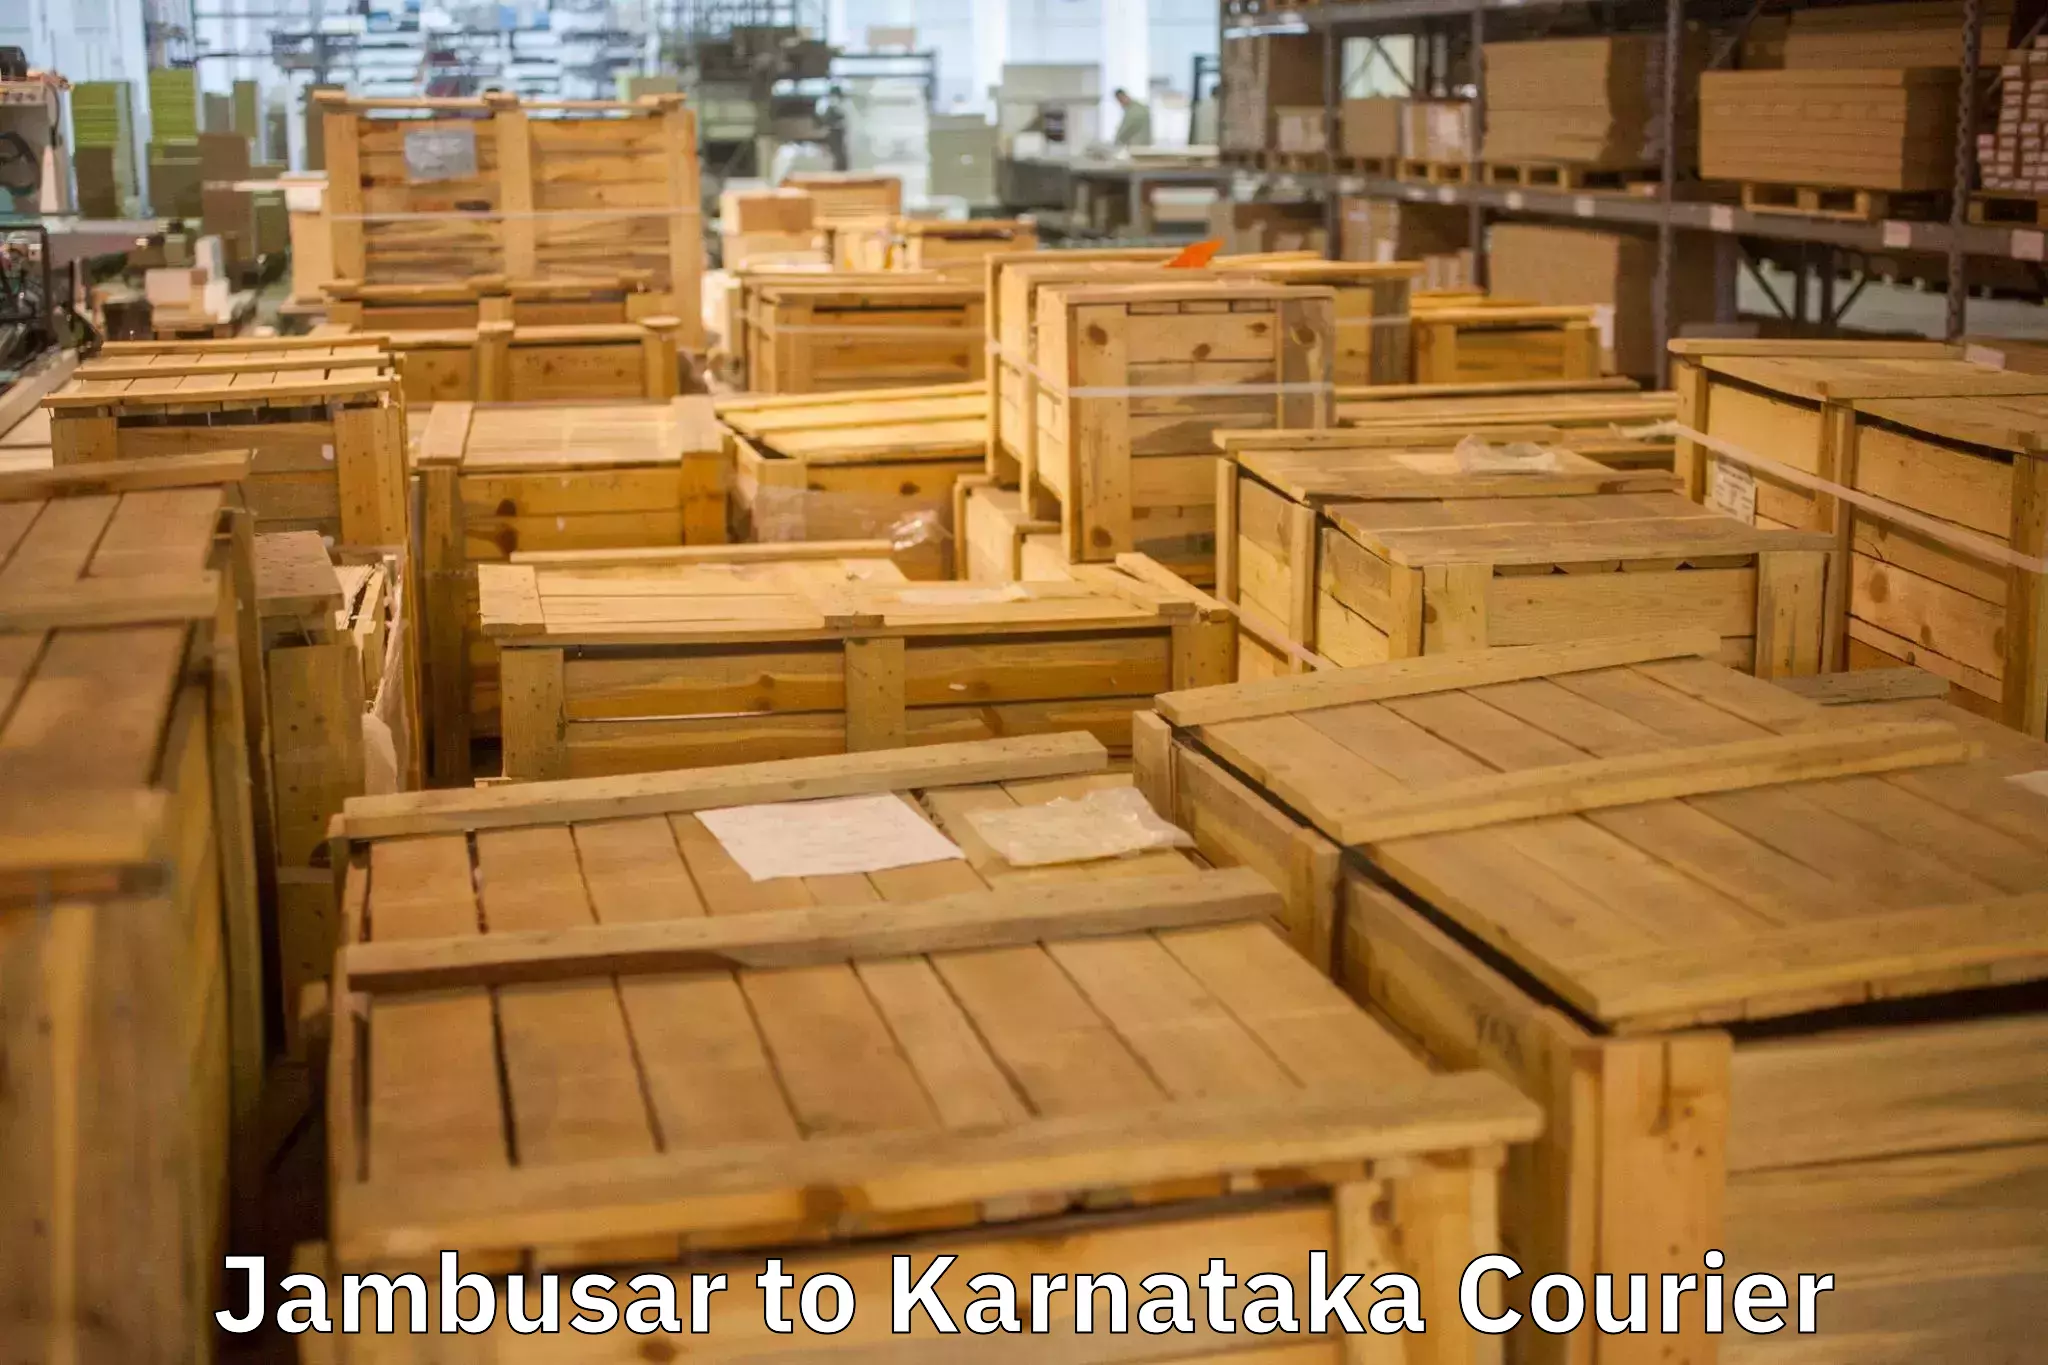 Safe home goods transport in Jambusar to Karnataka